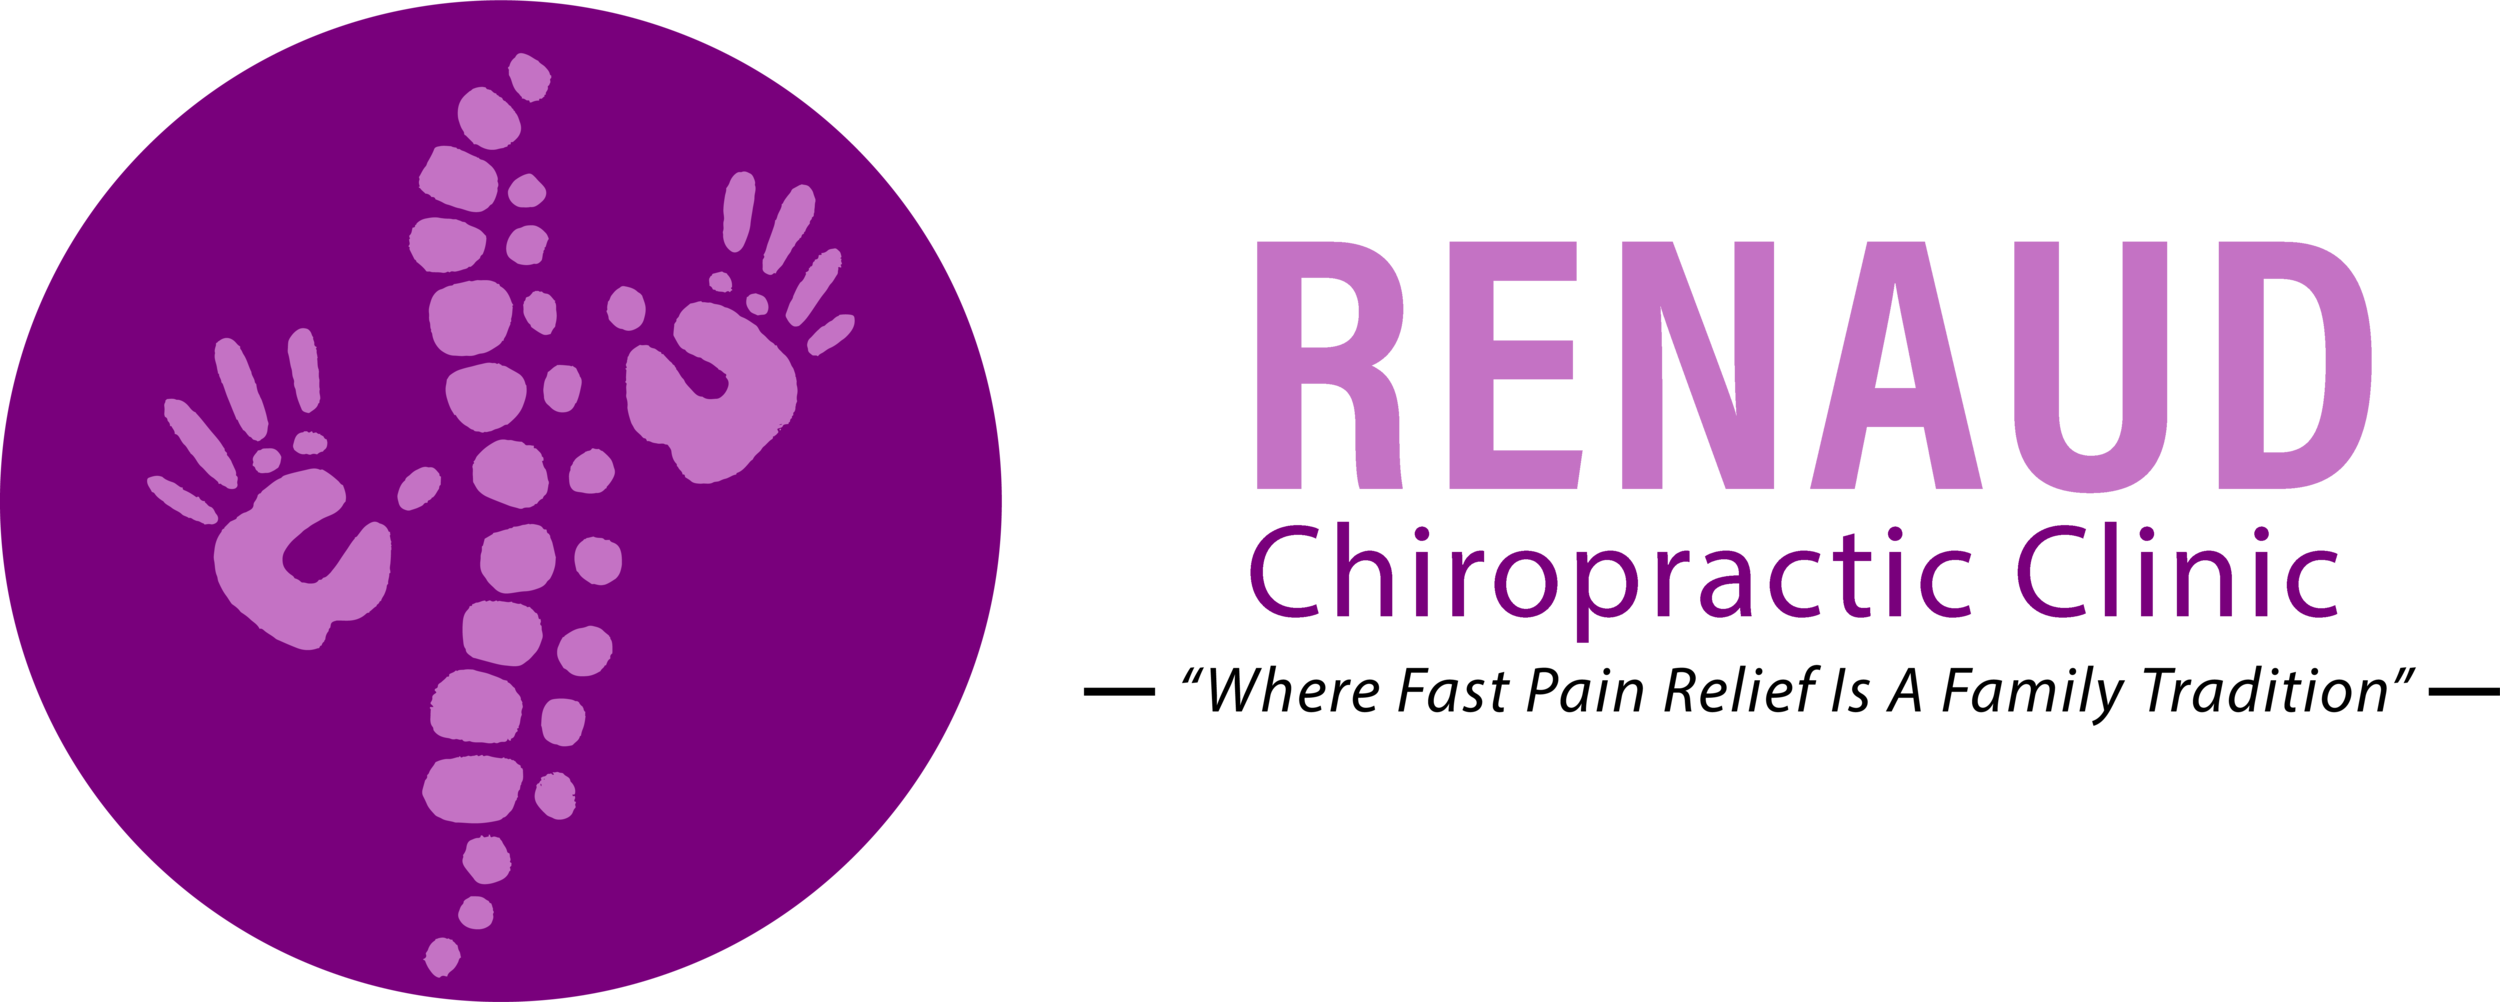 Renaud Chiropractic Clinic